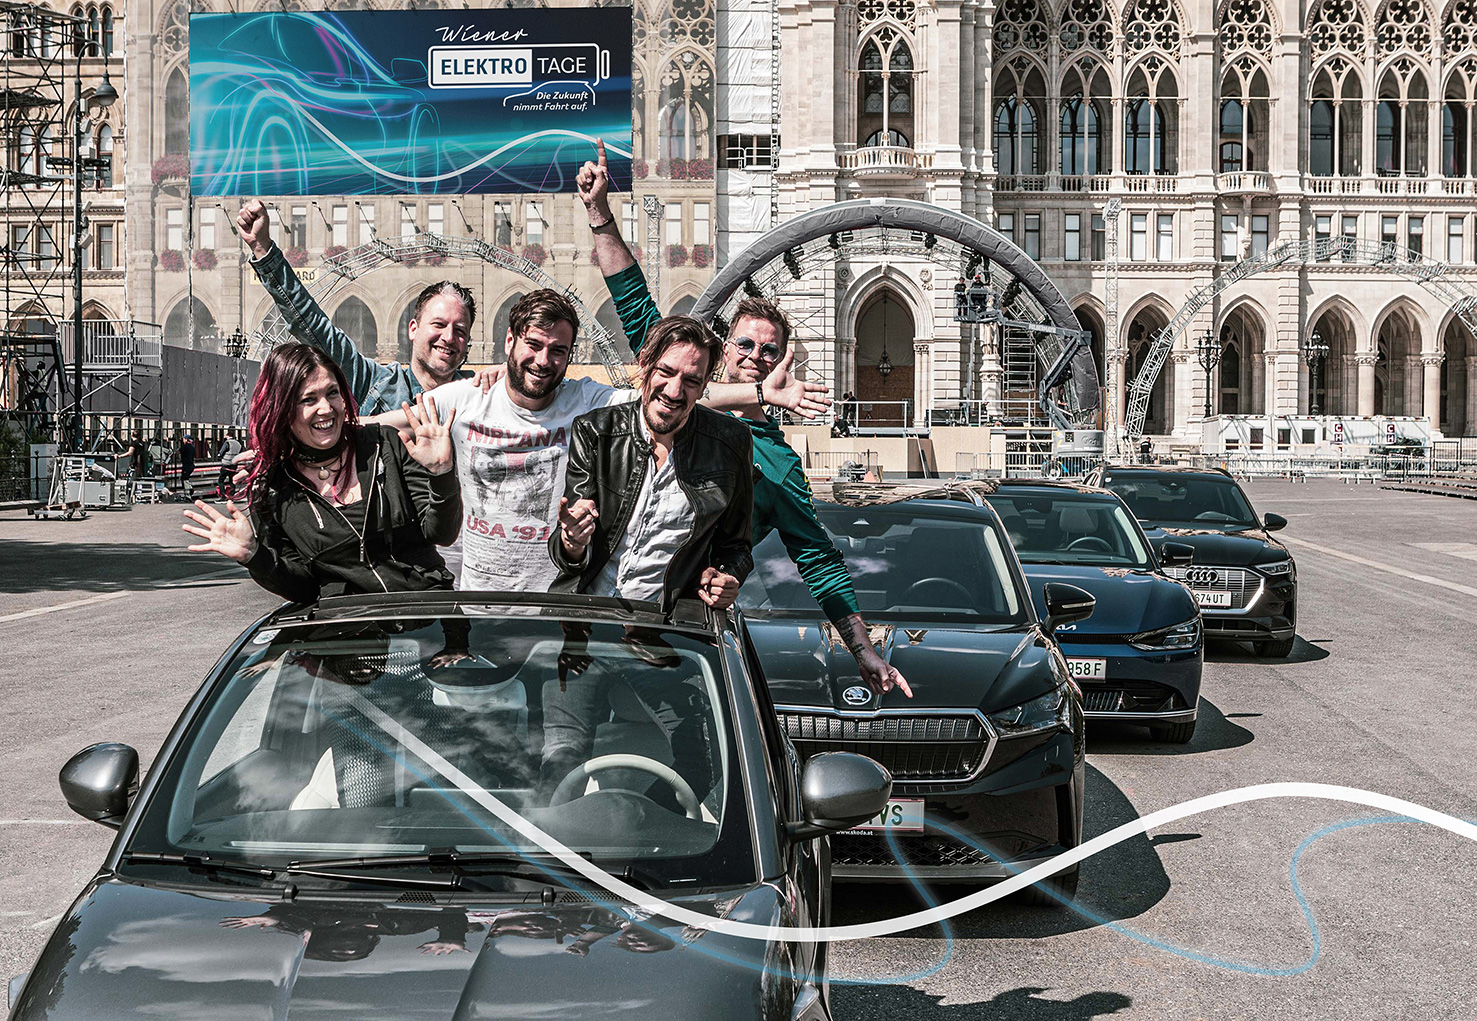 Das Event für E-Mobilität, neue Energie und einen nachhaltigen Lifestyle: Die Wiener Elektro Tage am Wiener Rathausplatz nehmen Fahrt auf